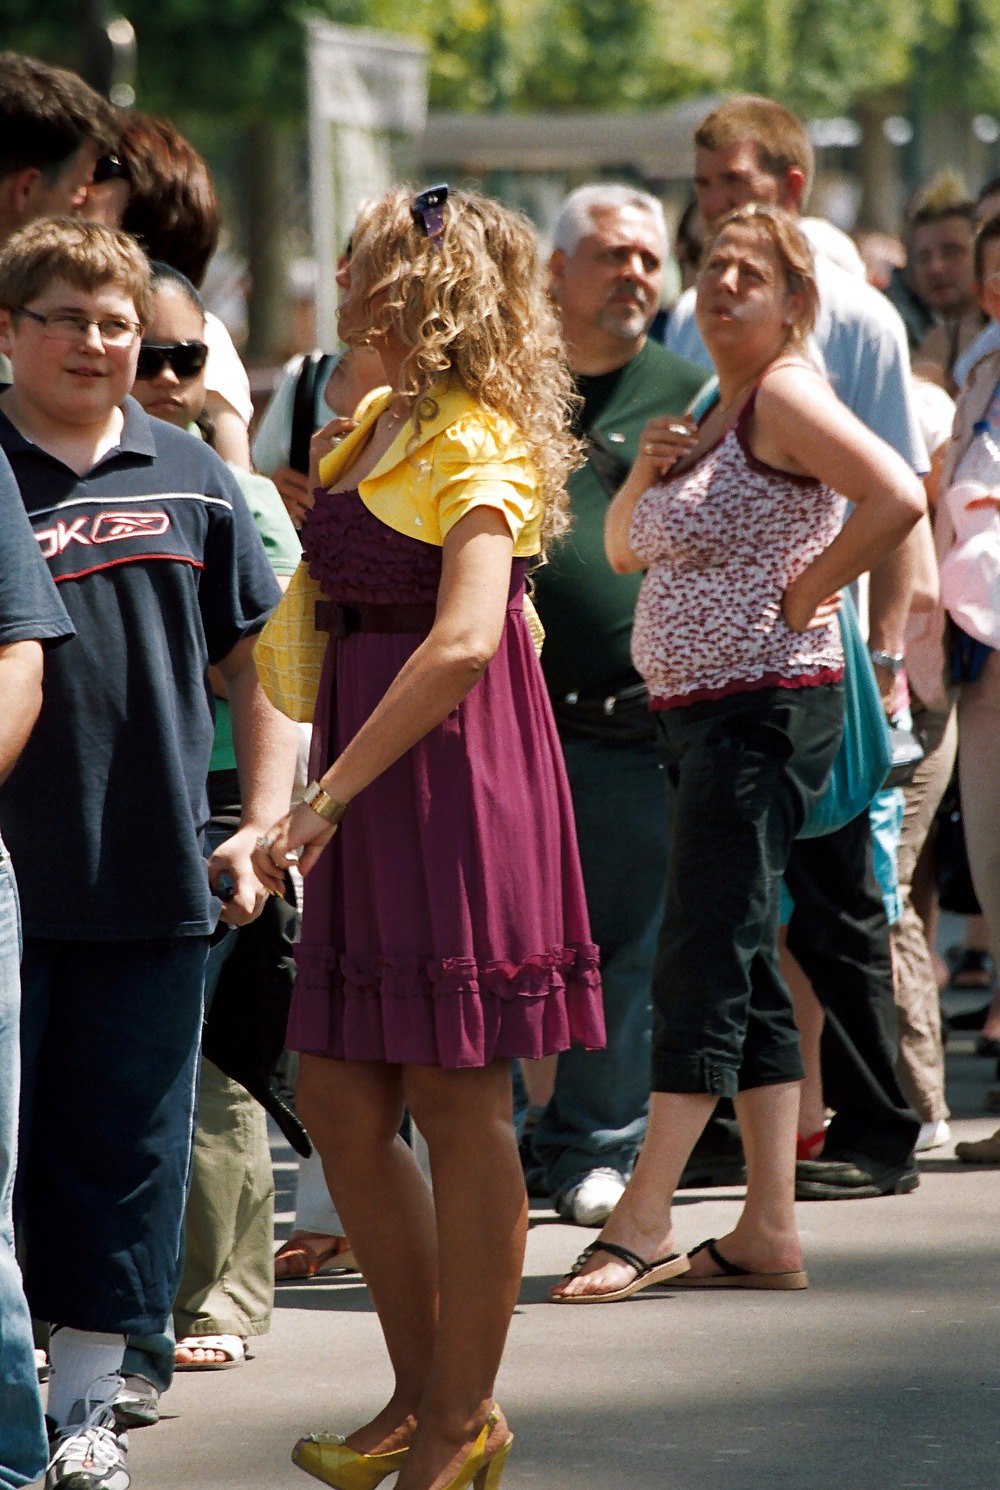 Stocking girls in public. Paris, june 2008 #35789453